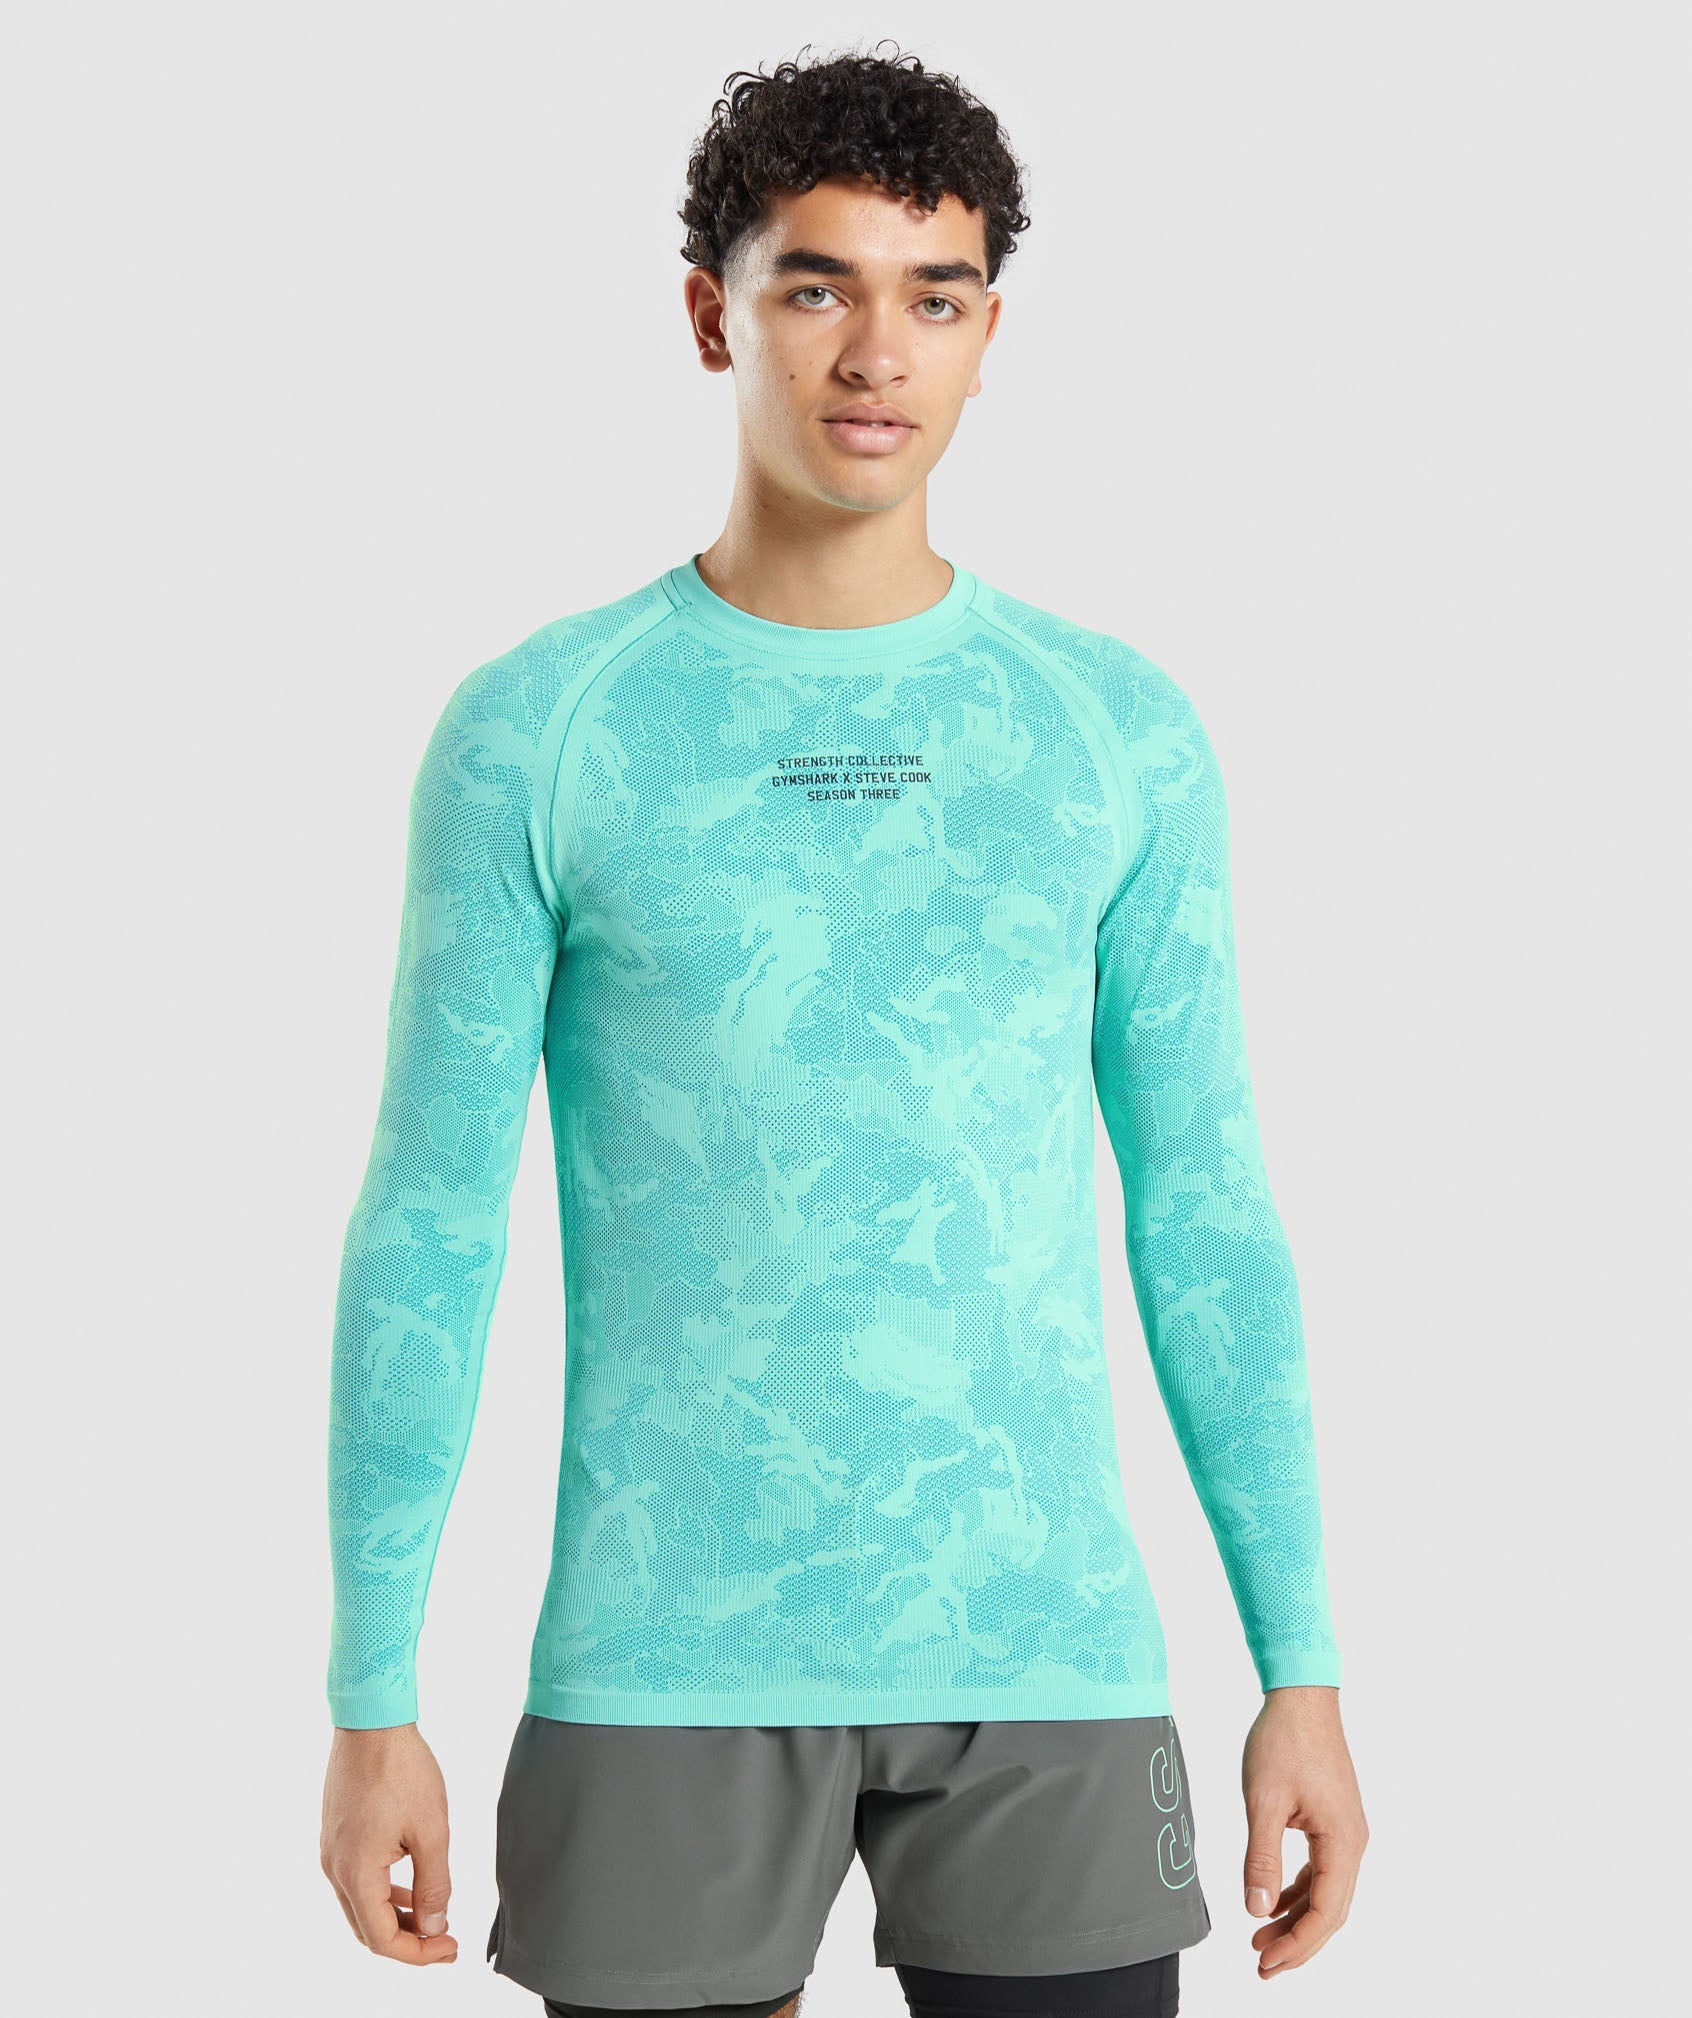 Gymshark//Steve Cook Long Sleeve Seamless T-Shirt